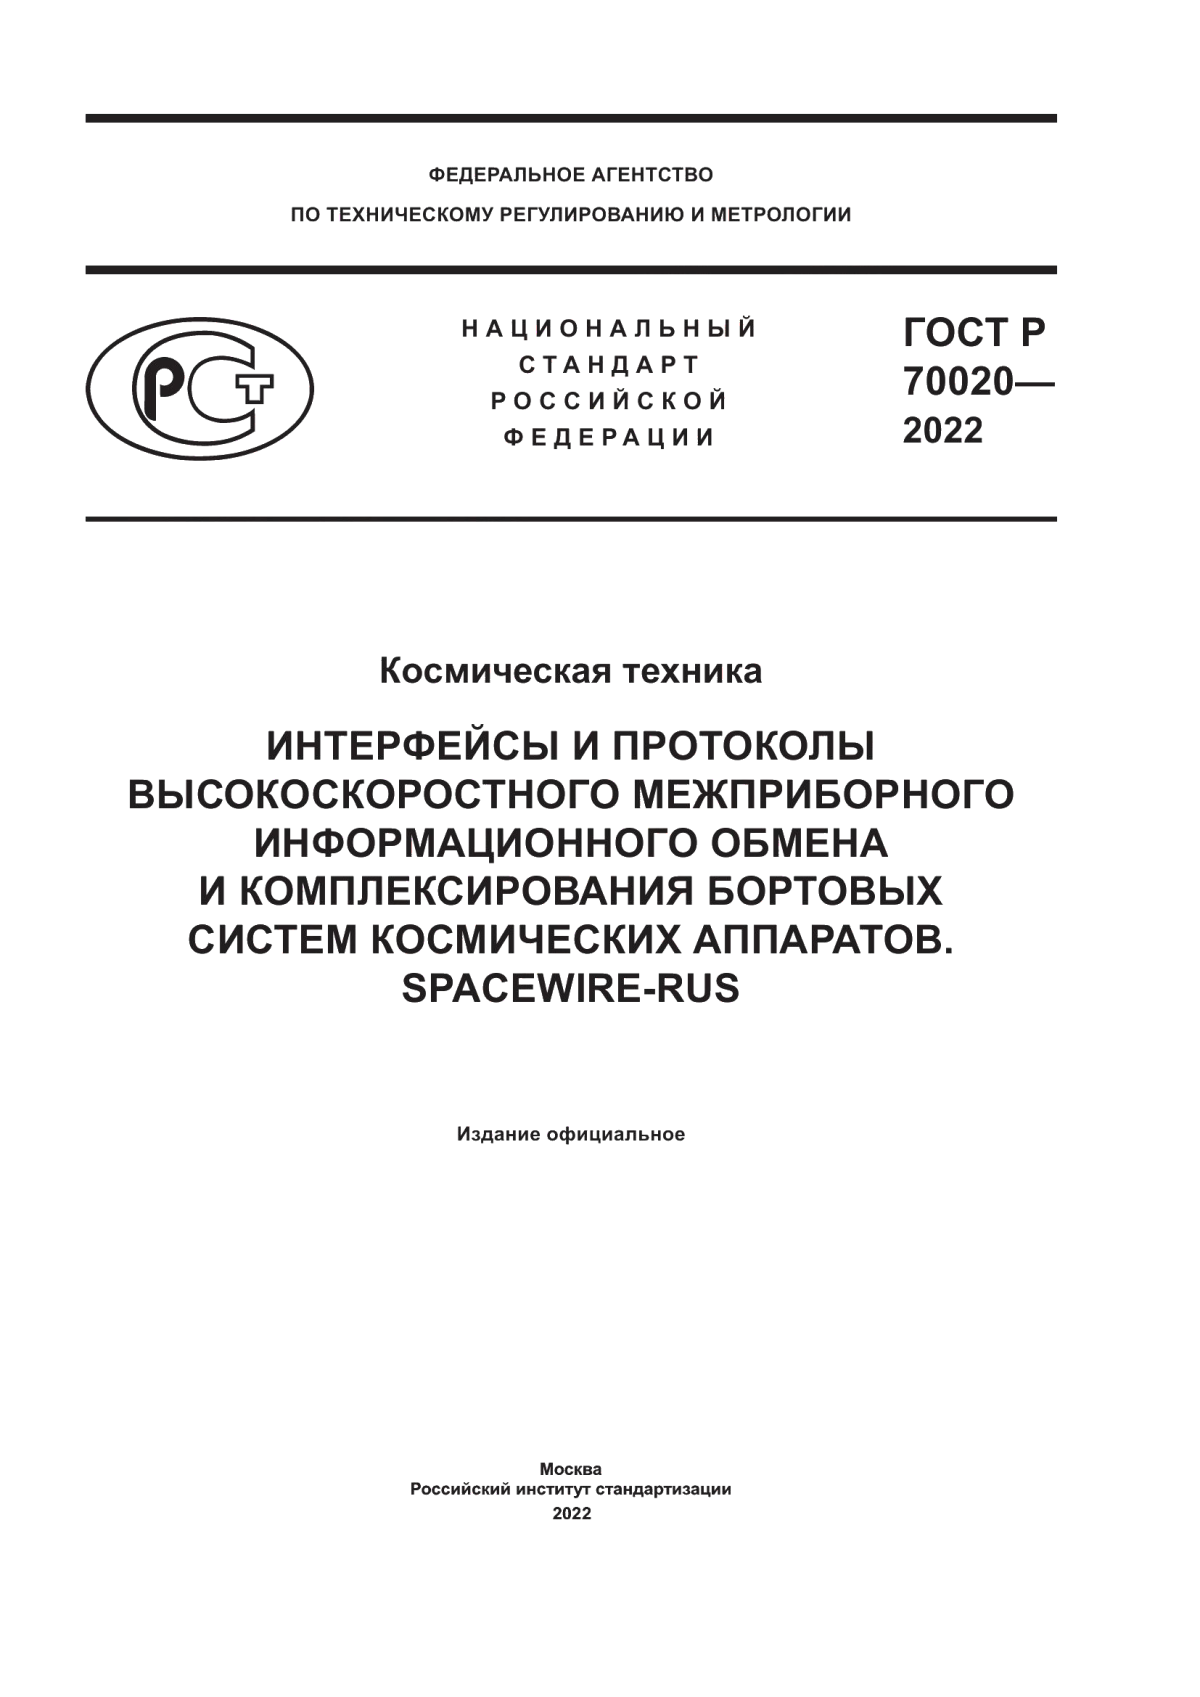 ГОСТ Р 70020-2022 Космическая техника. Интерфейсы и протоколы высокоскоростного межприборного информационного обмена и комплексирования бортовых систем космических аппаратов. SpaceWire-RUS